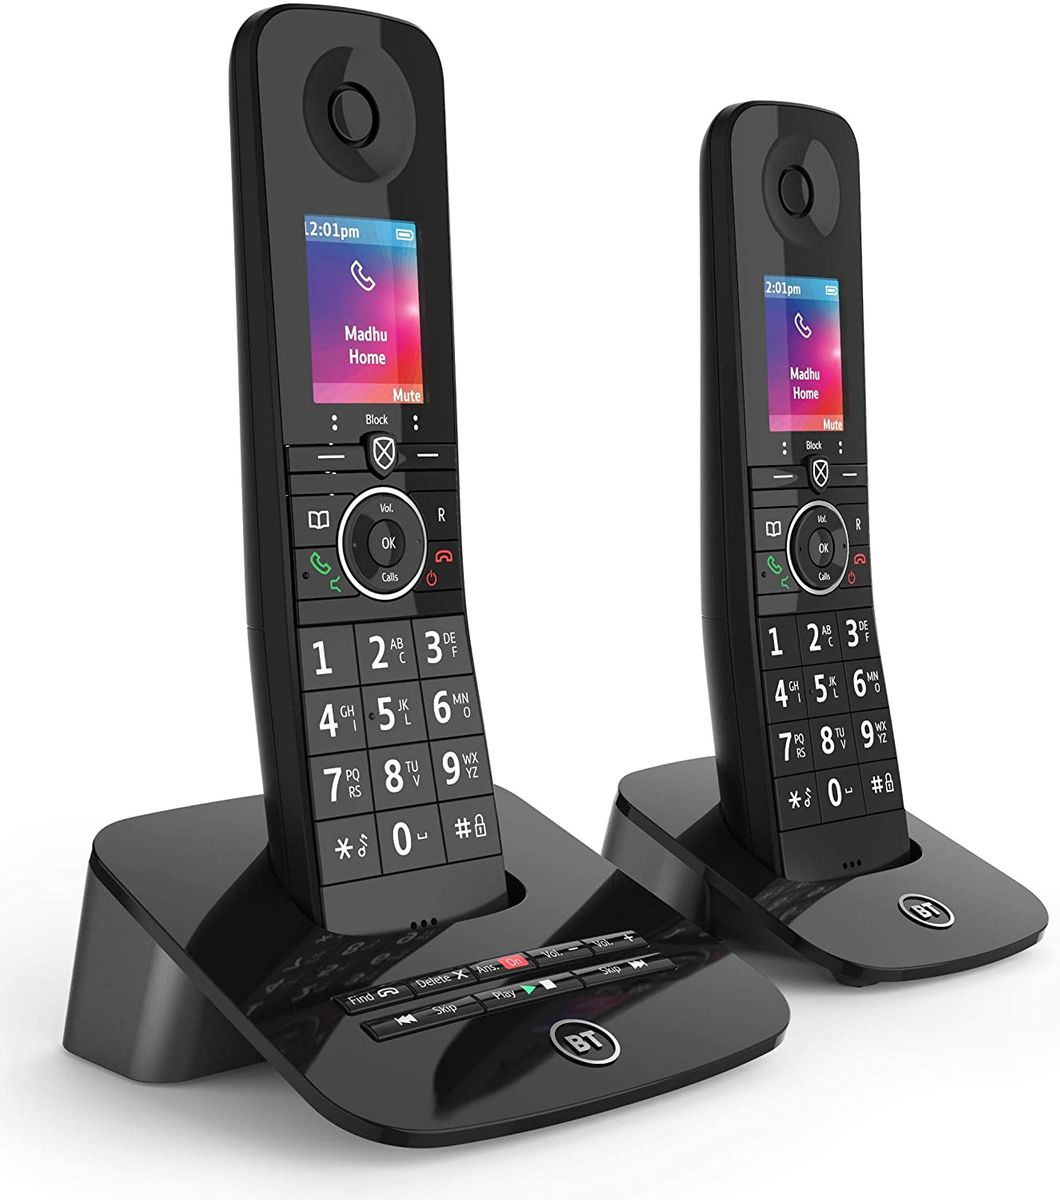 BT Premium Wireless Home Phone Call Block Answering Machine Dual Handset